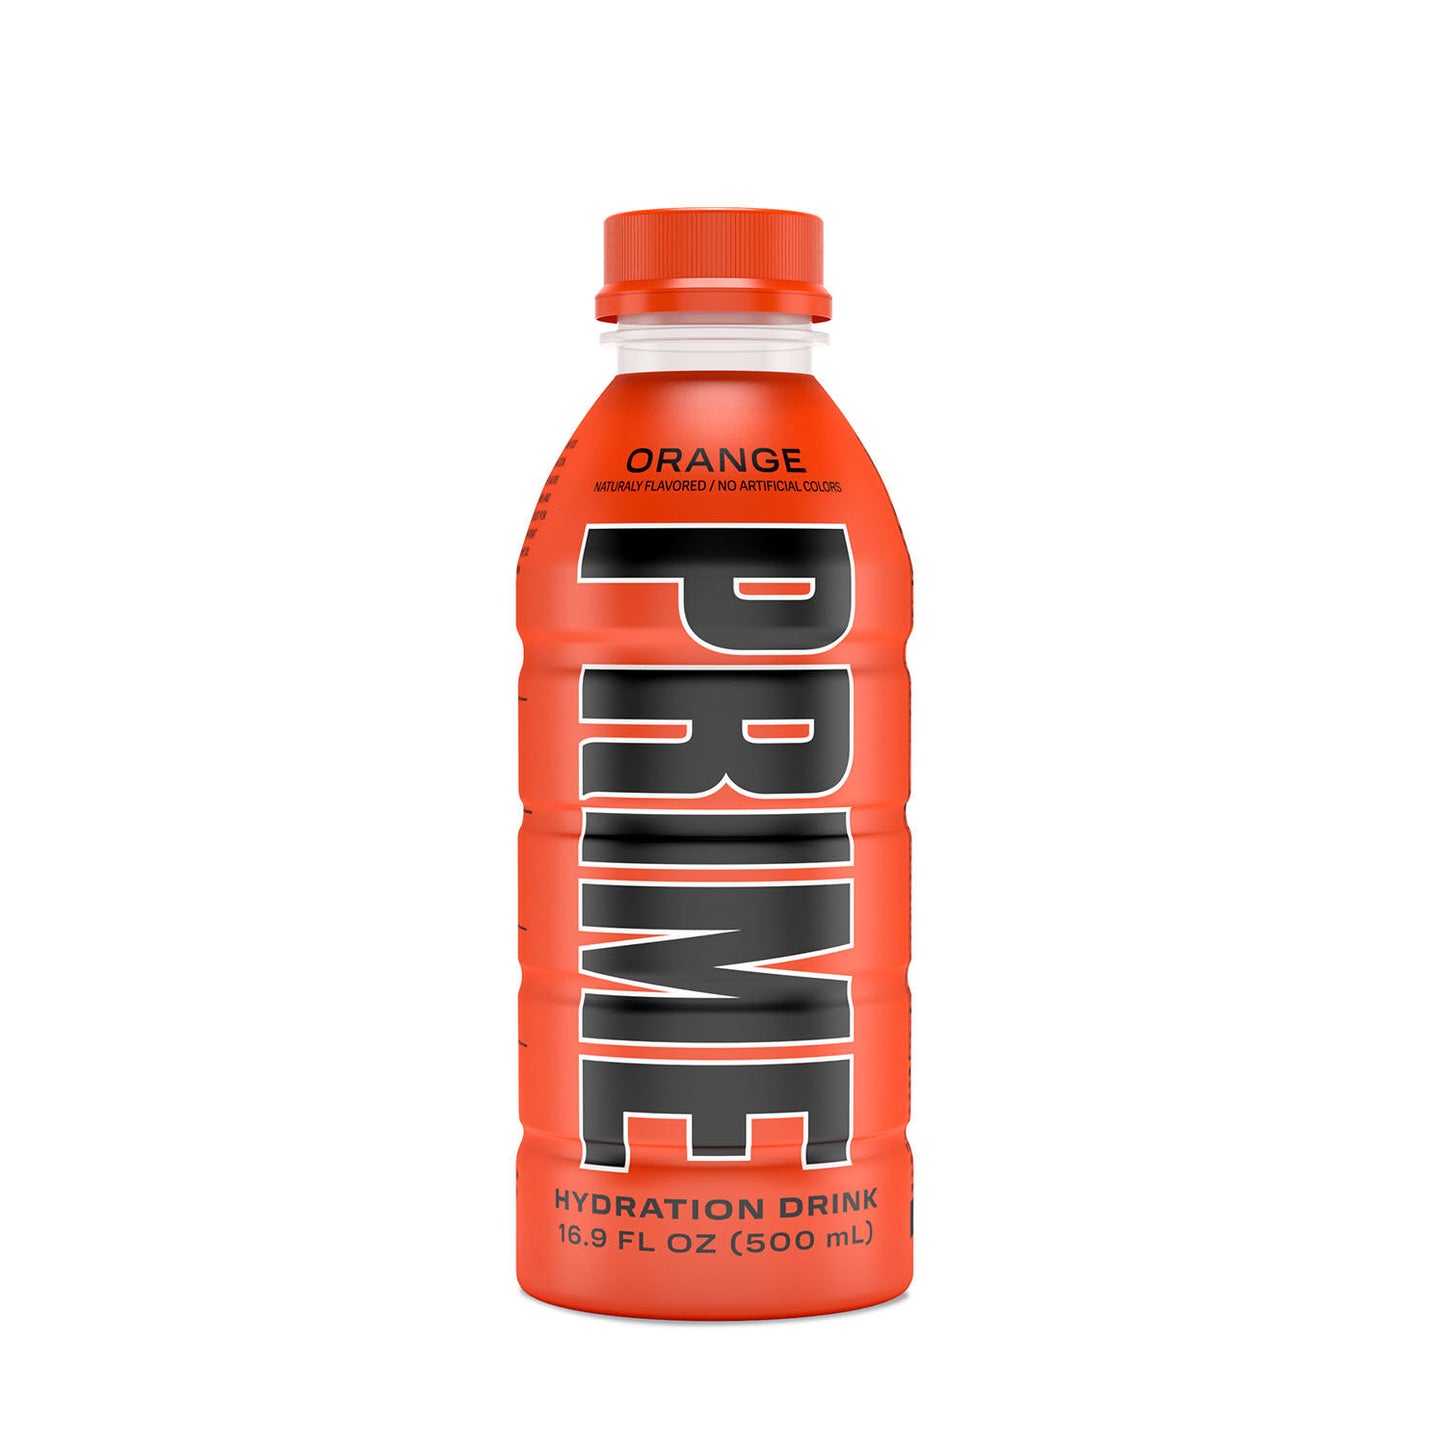 500ml bottle of Orange Prime